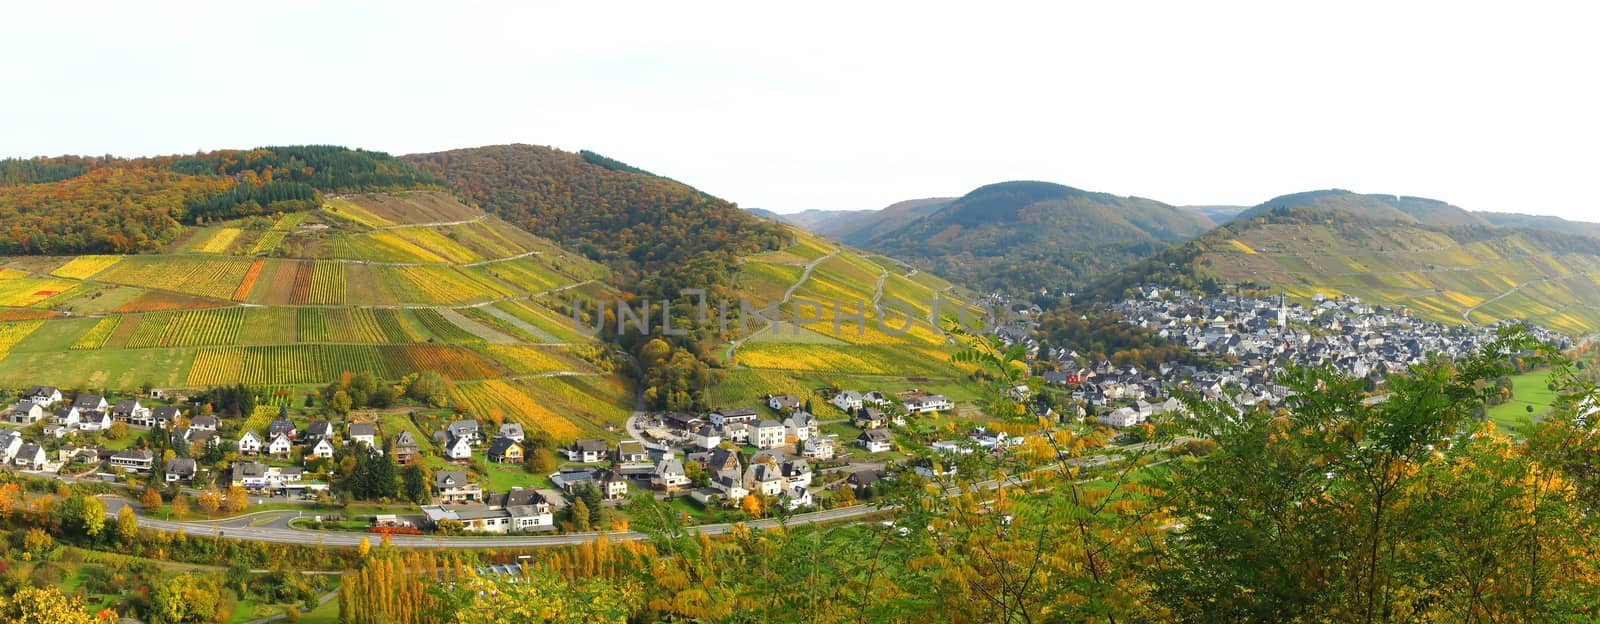 Enkirch an der Mosel Panorama im Herbst
